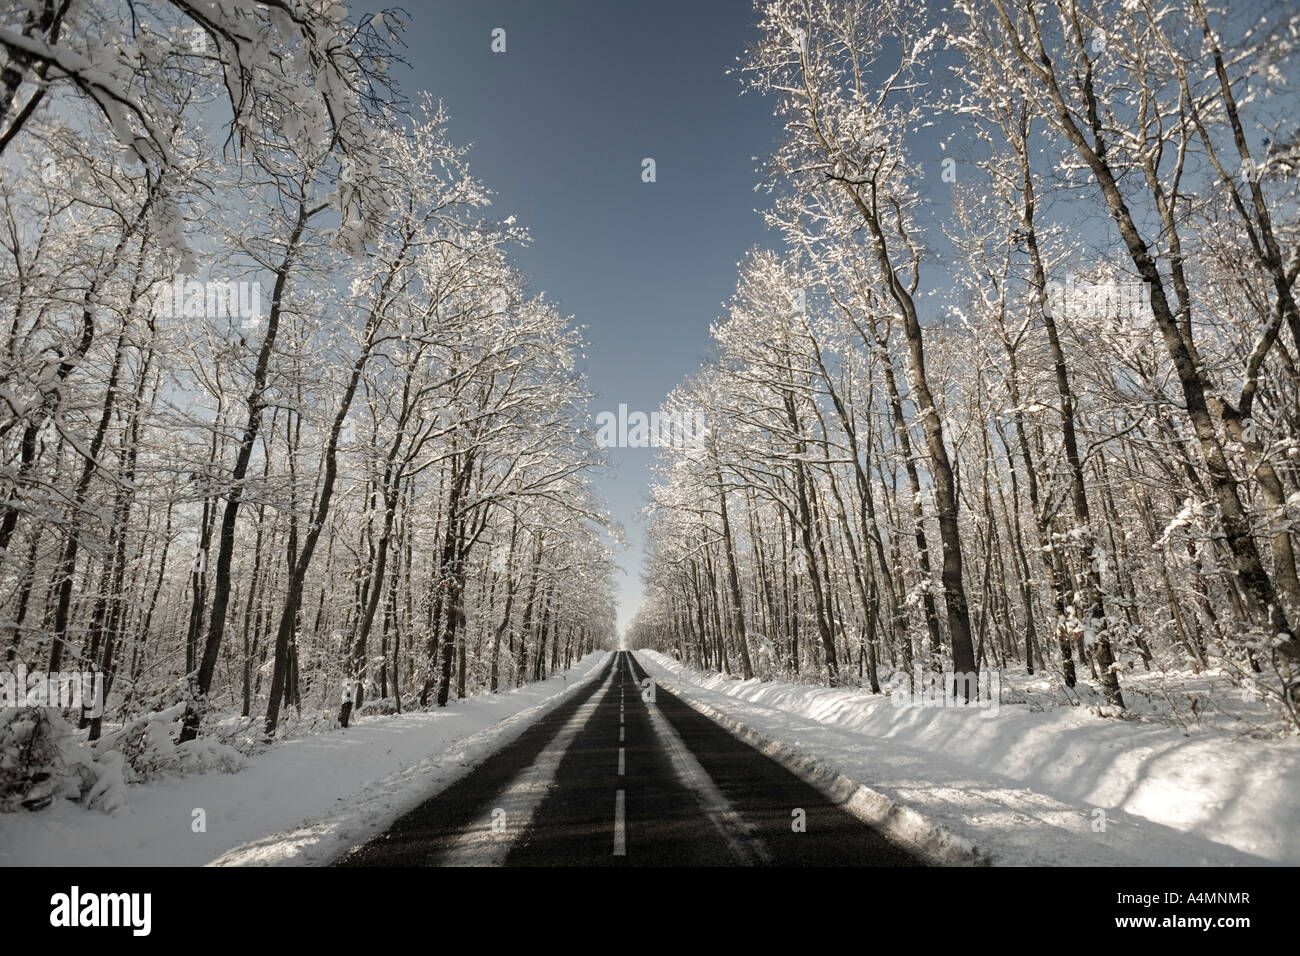 A road crossing through a snowy oak forest (France). Route traversant une forêt de chênes (Quercus sp) recouverte de neige. Stock Photo